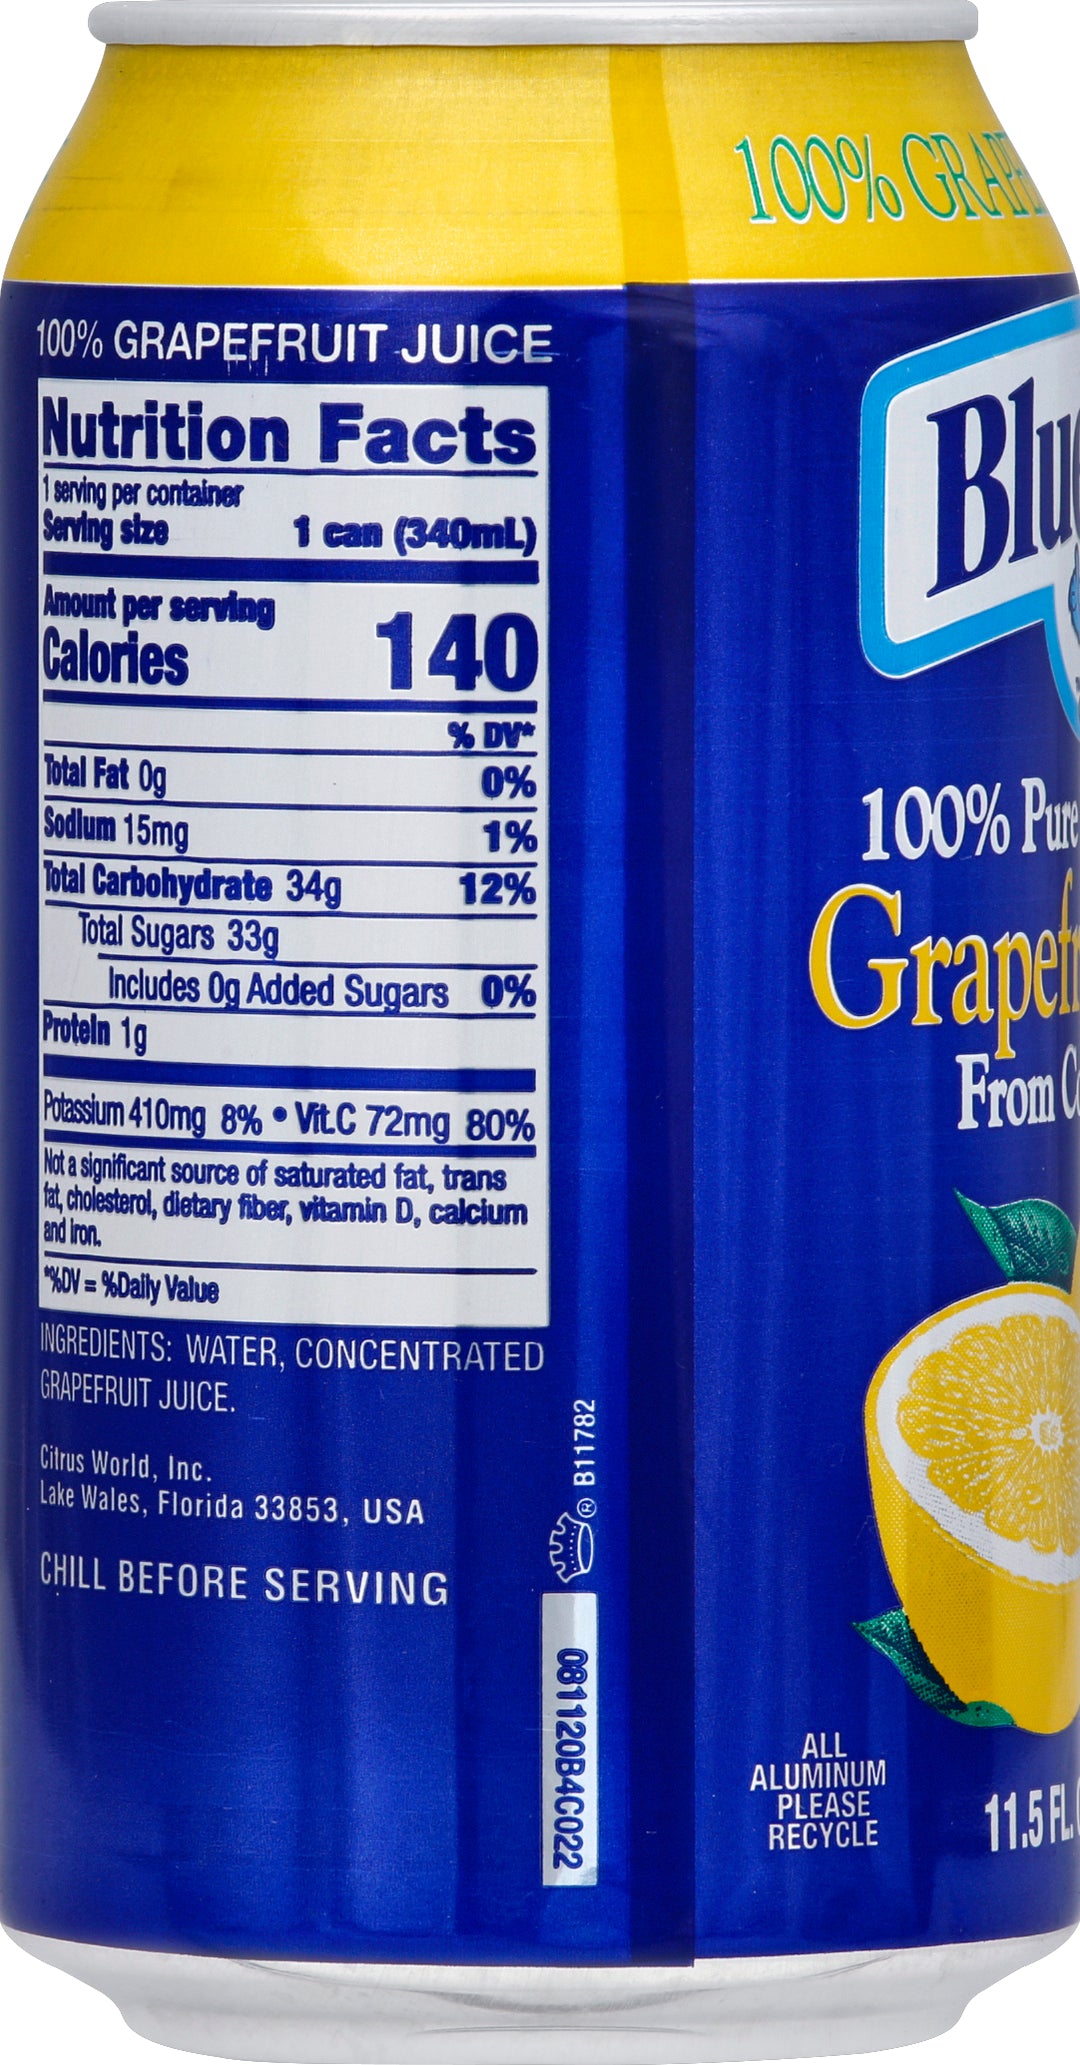 Bluebird Juice Grapefruit-11.5 fl oz.s-24/Case